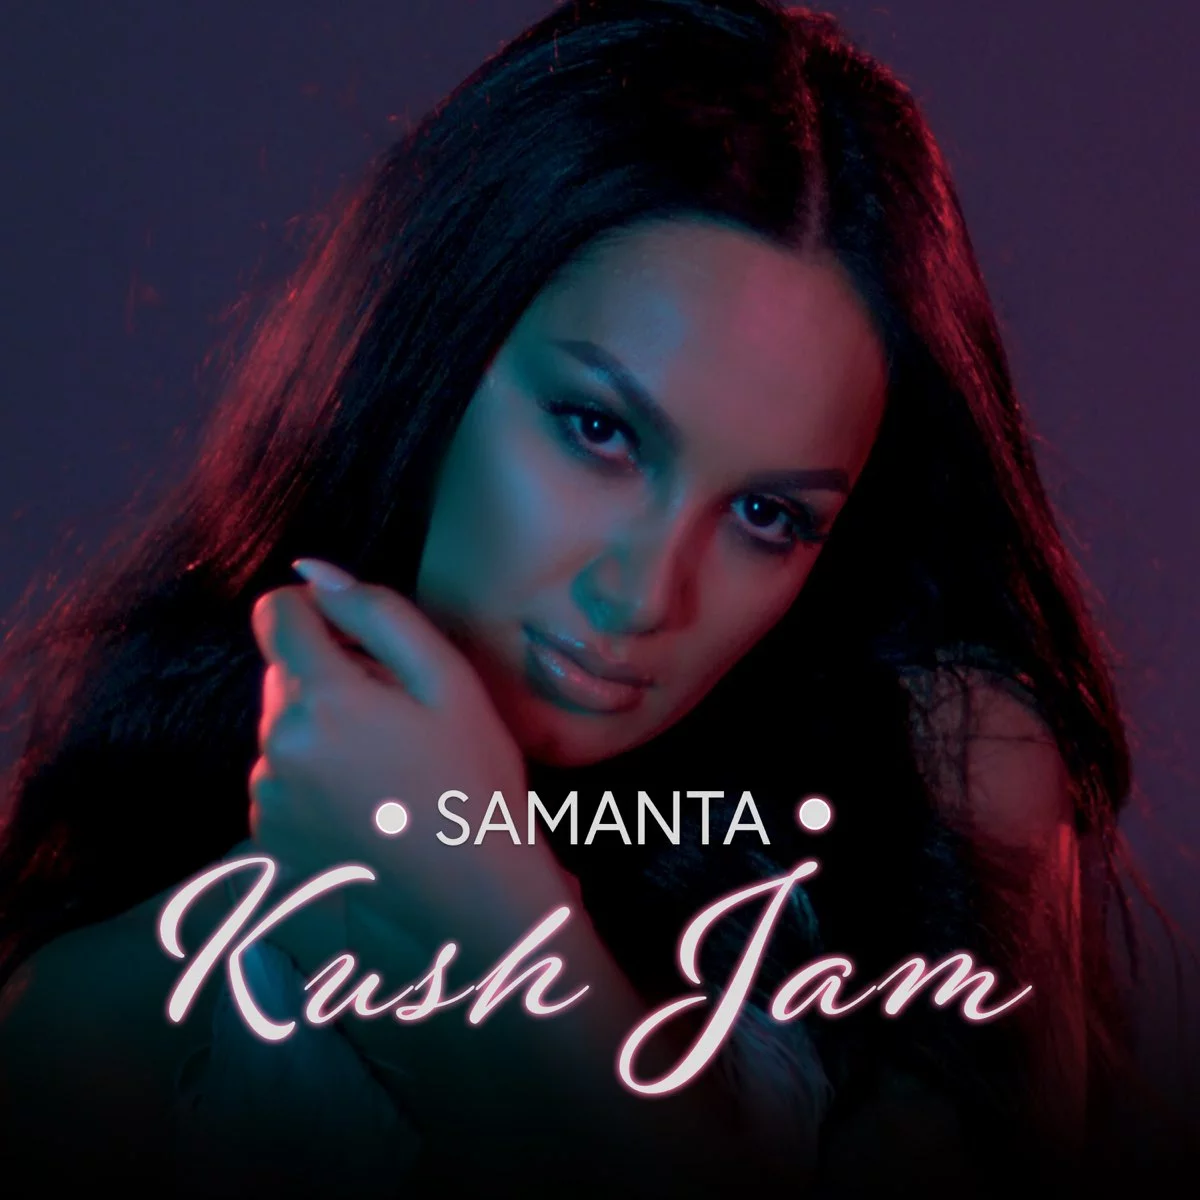 Samanta - Kush Je